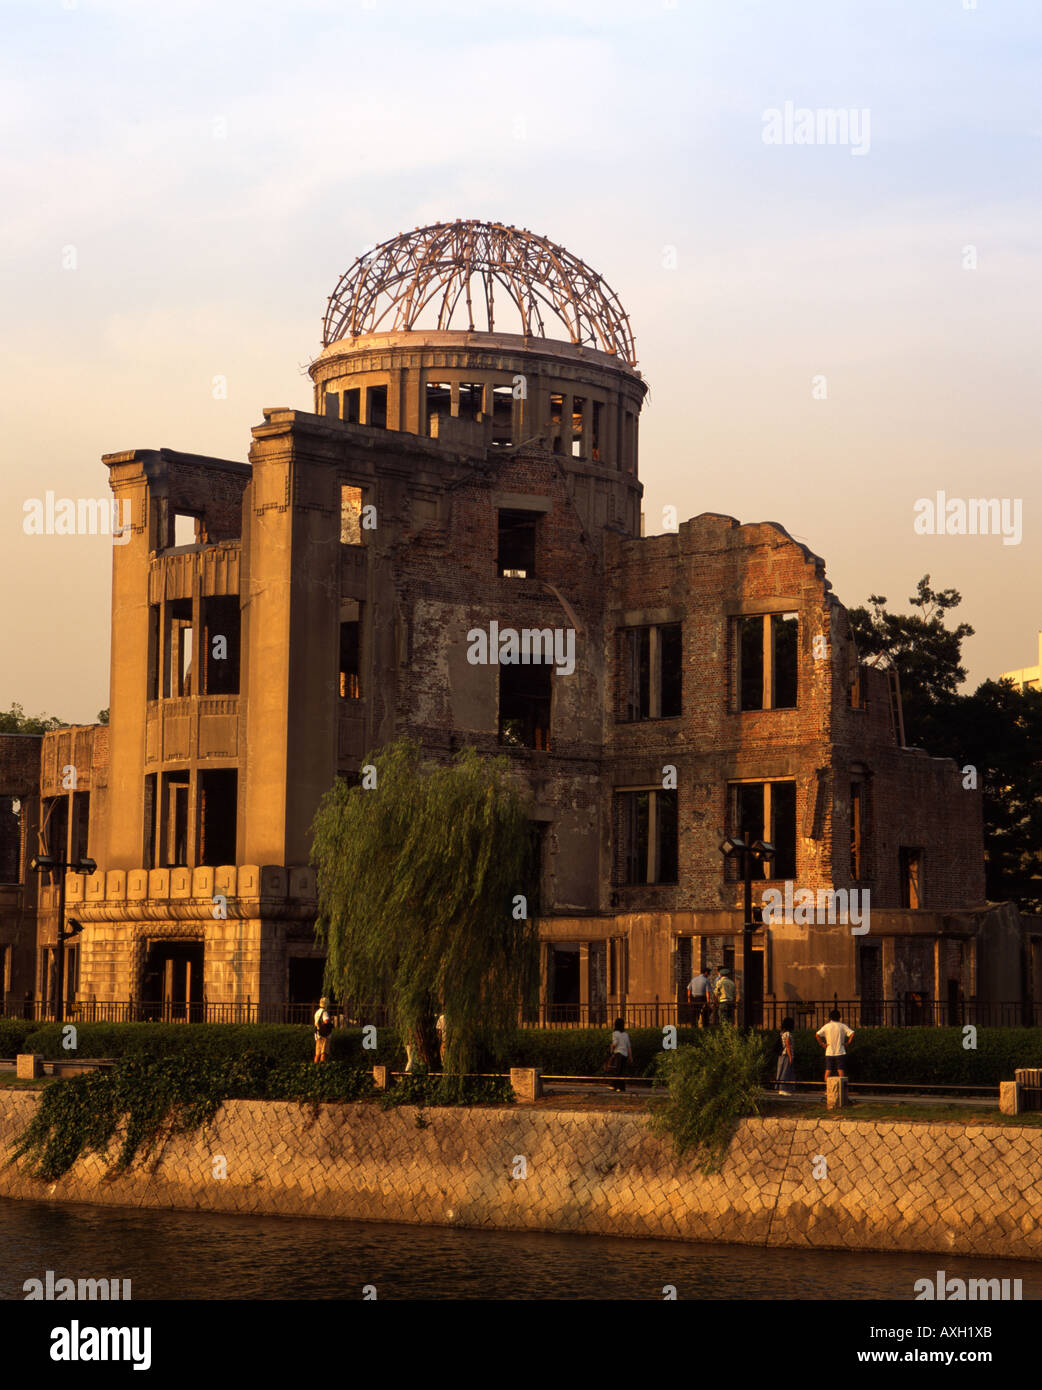 A-Bomb Dome ( Genbaku Dome ), Hiroshima, Giappone. Un sito Patrimonio Mondiale dell'UNESCO. Foto Stock